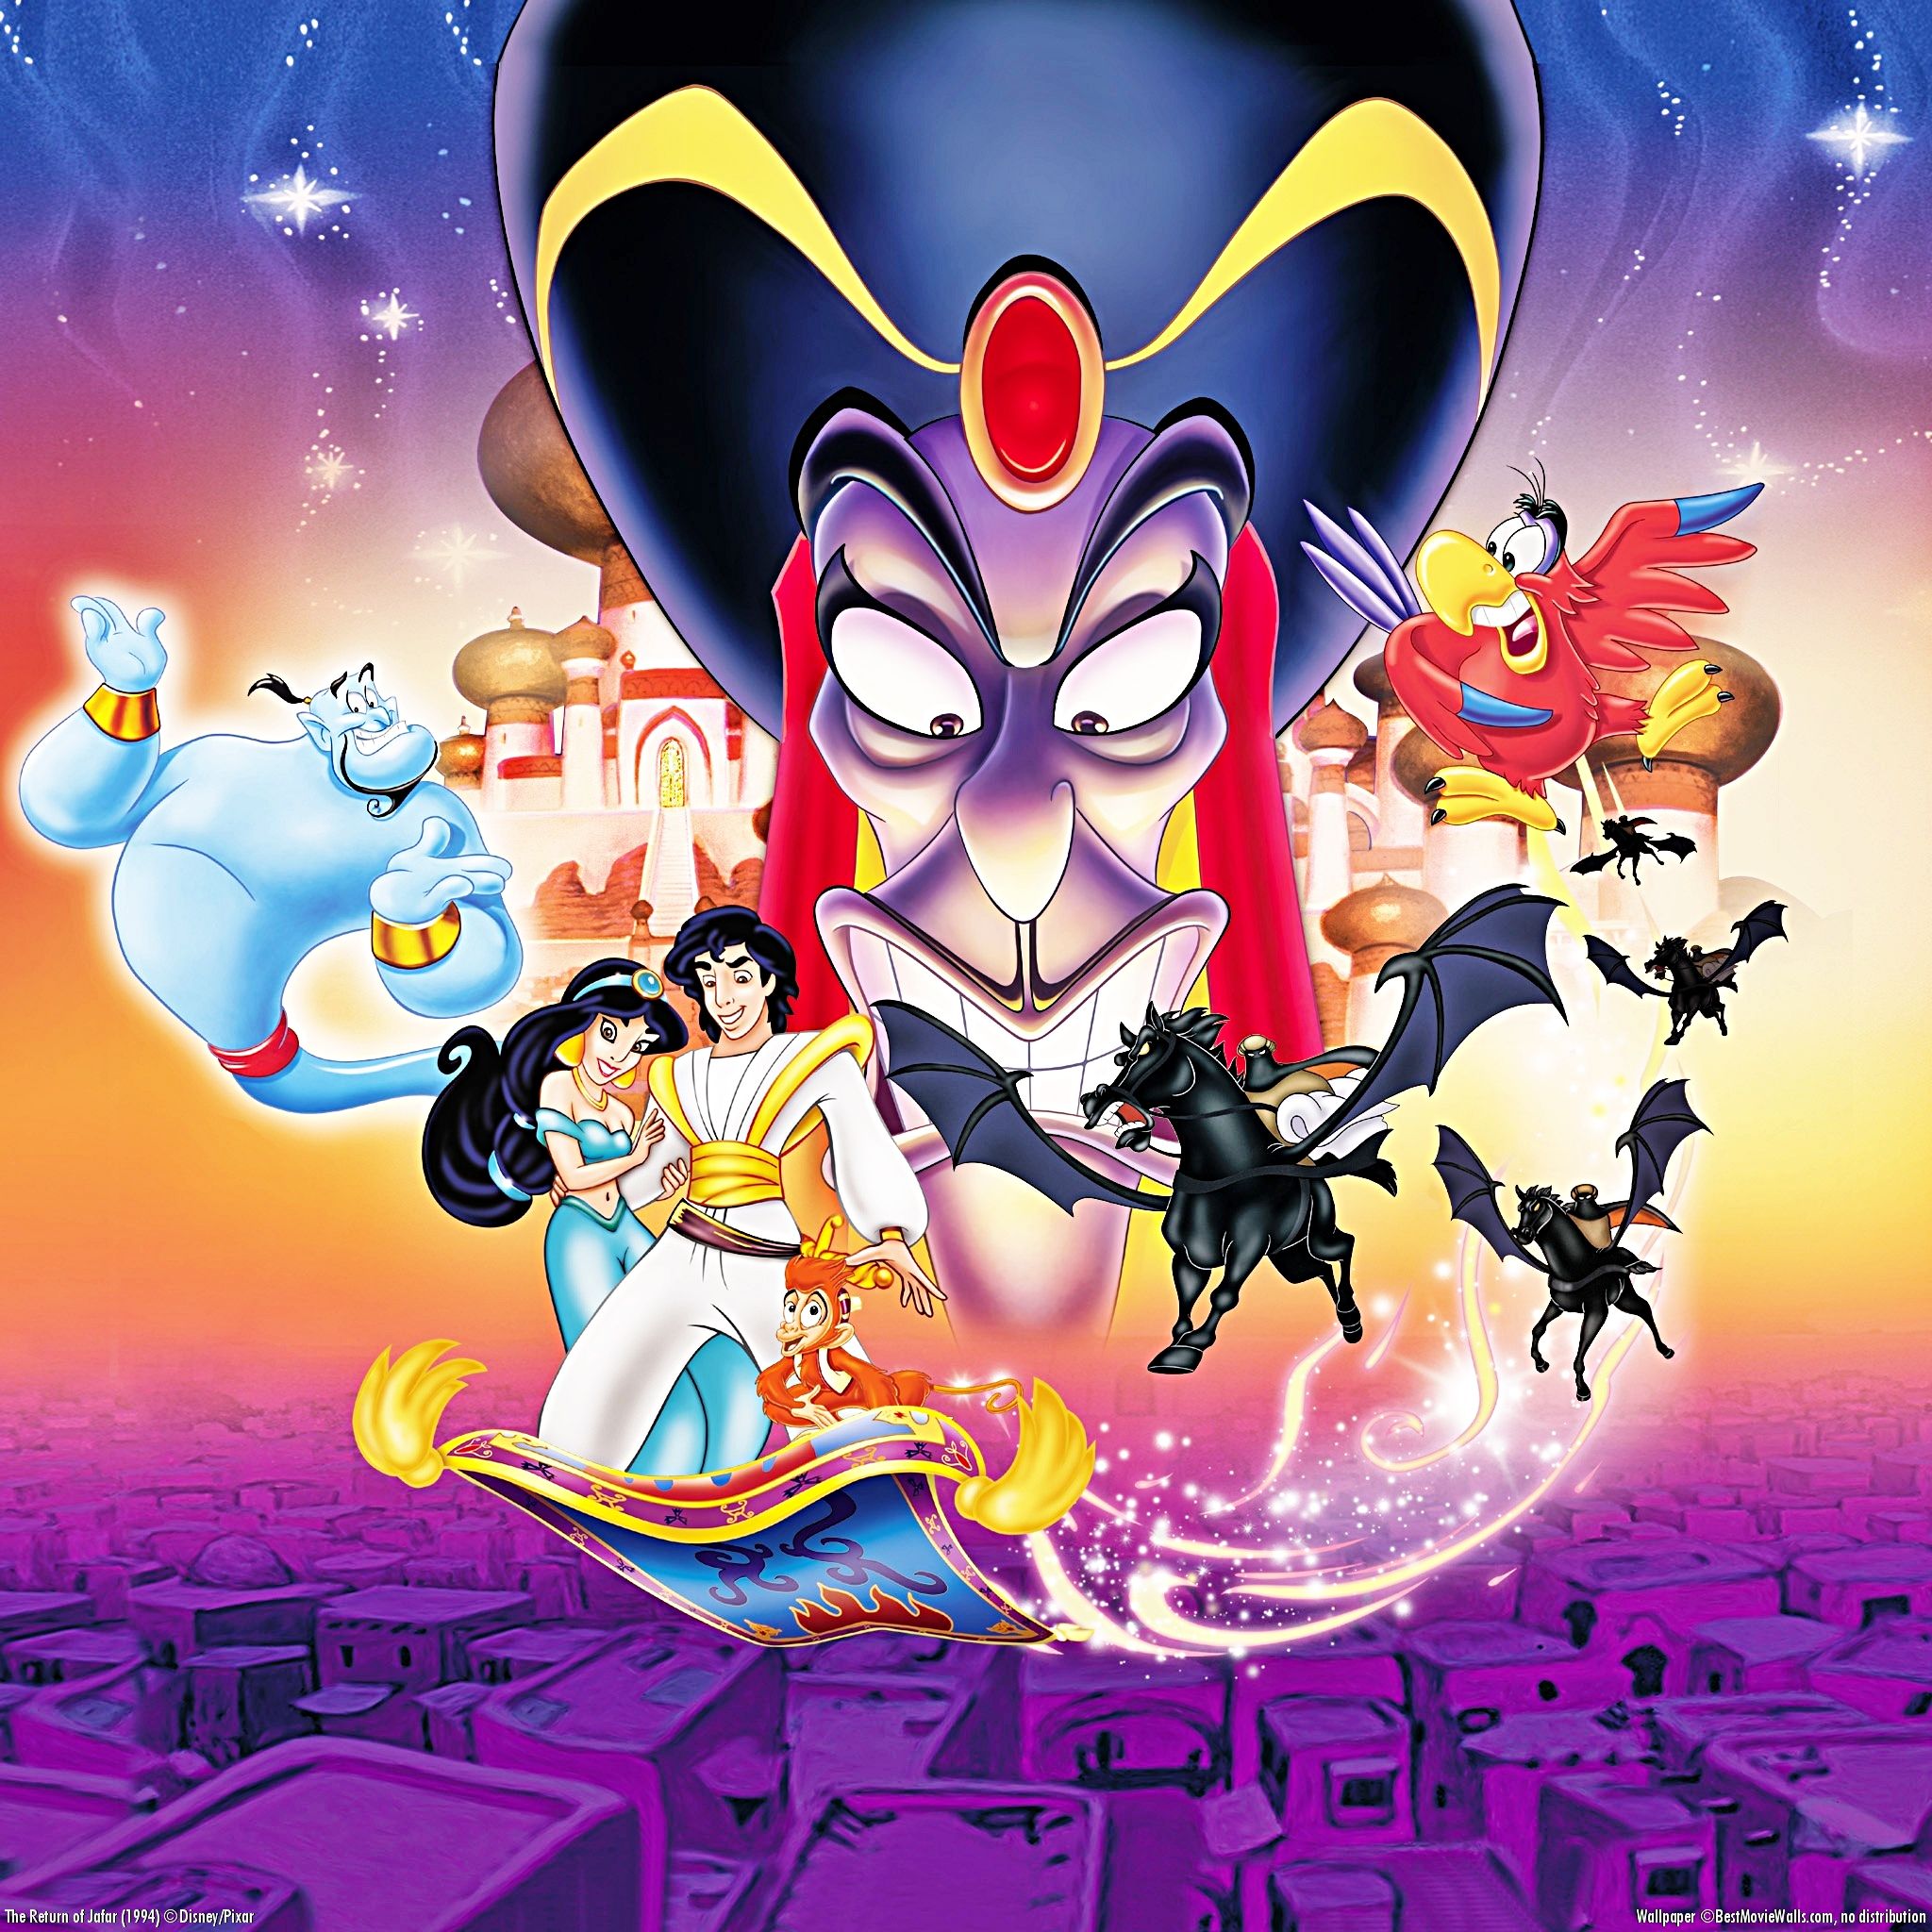 Aladdin: The Return Of Jafar wallpaper, Movie, HQ Aladdin